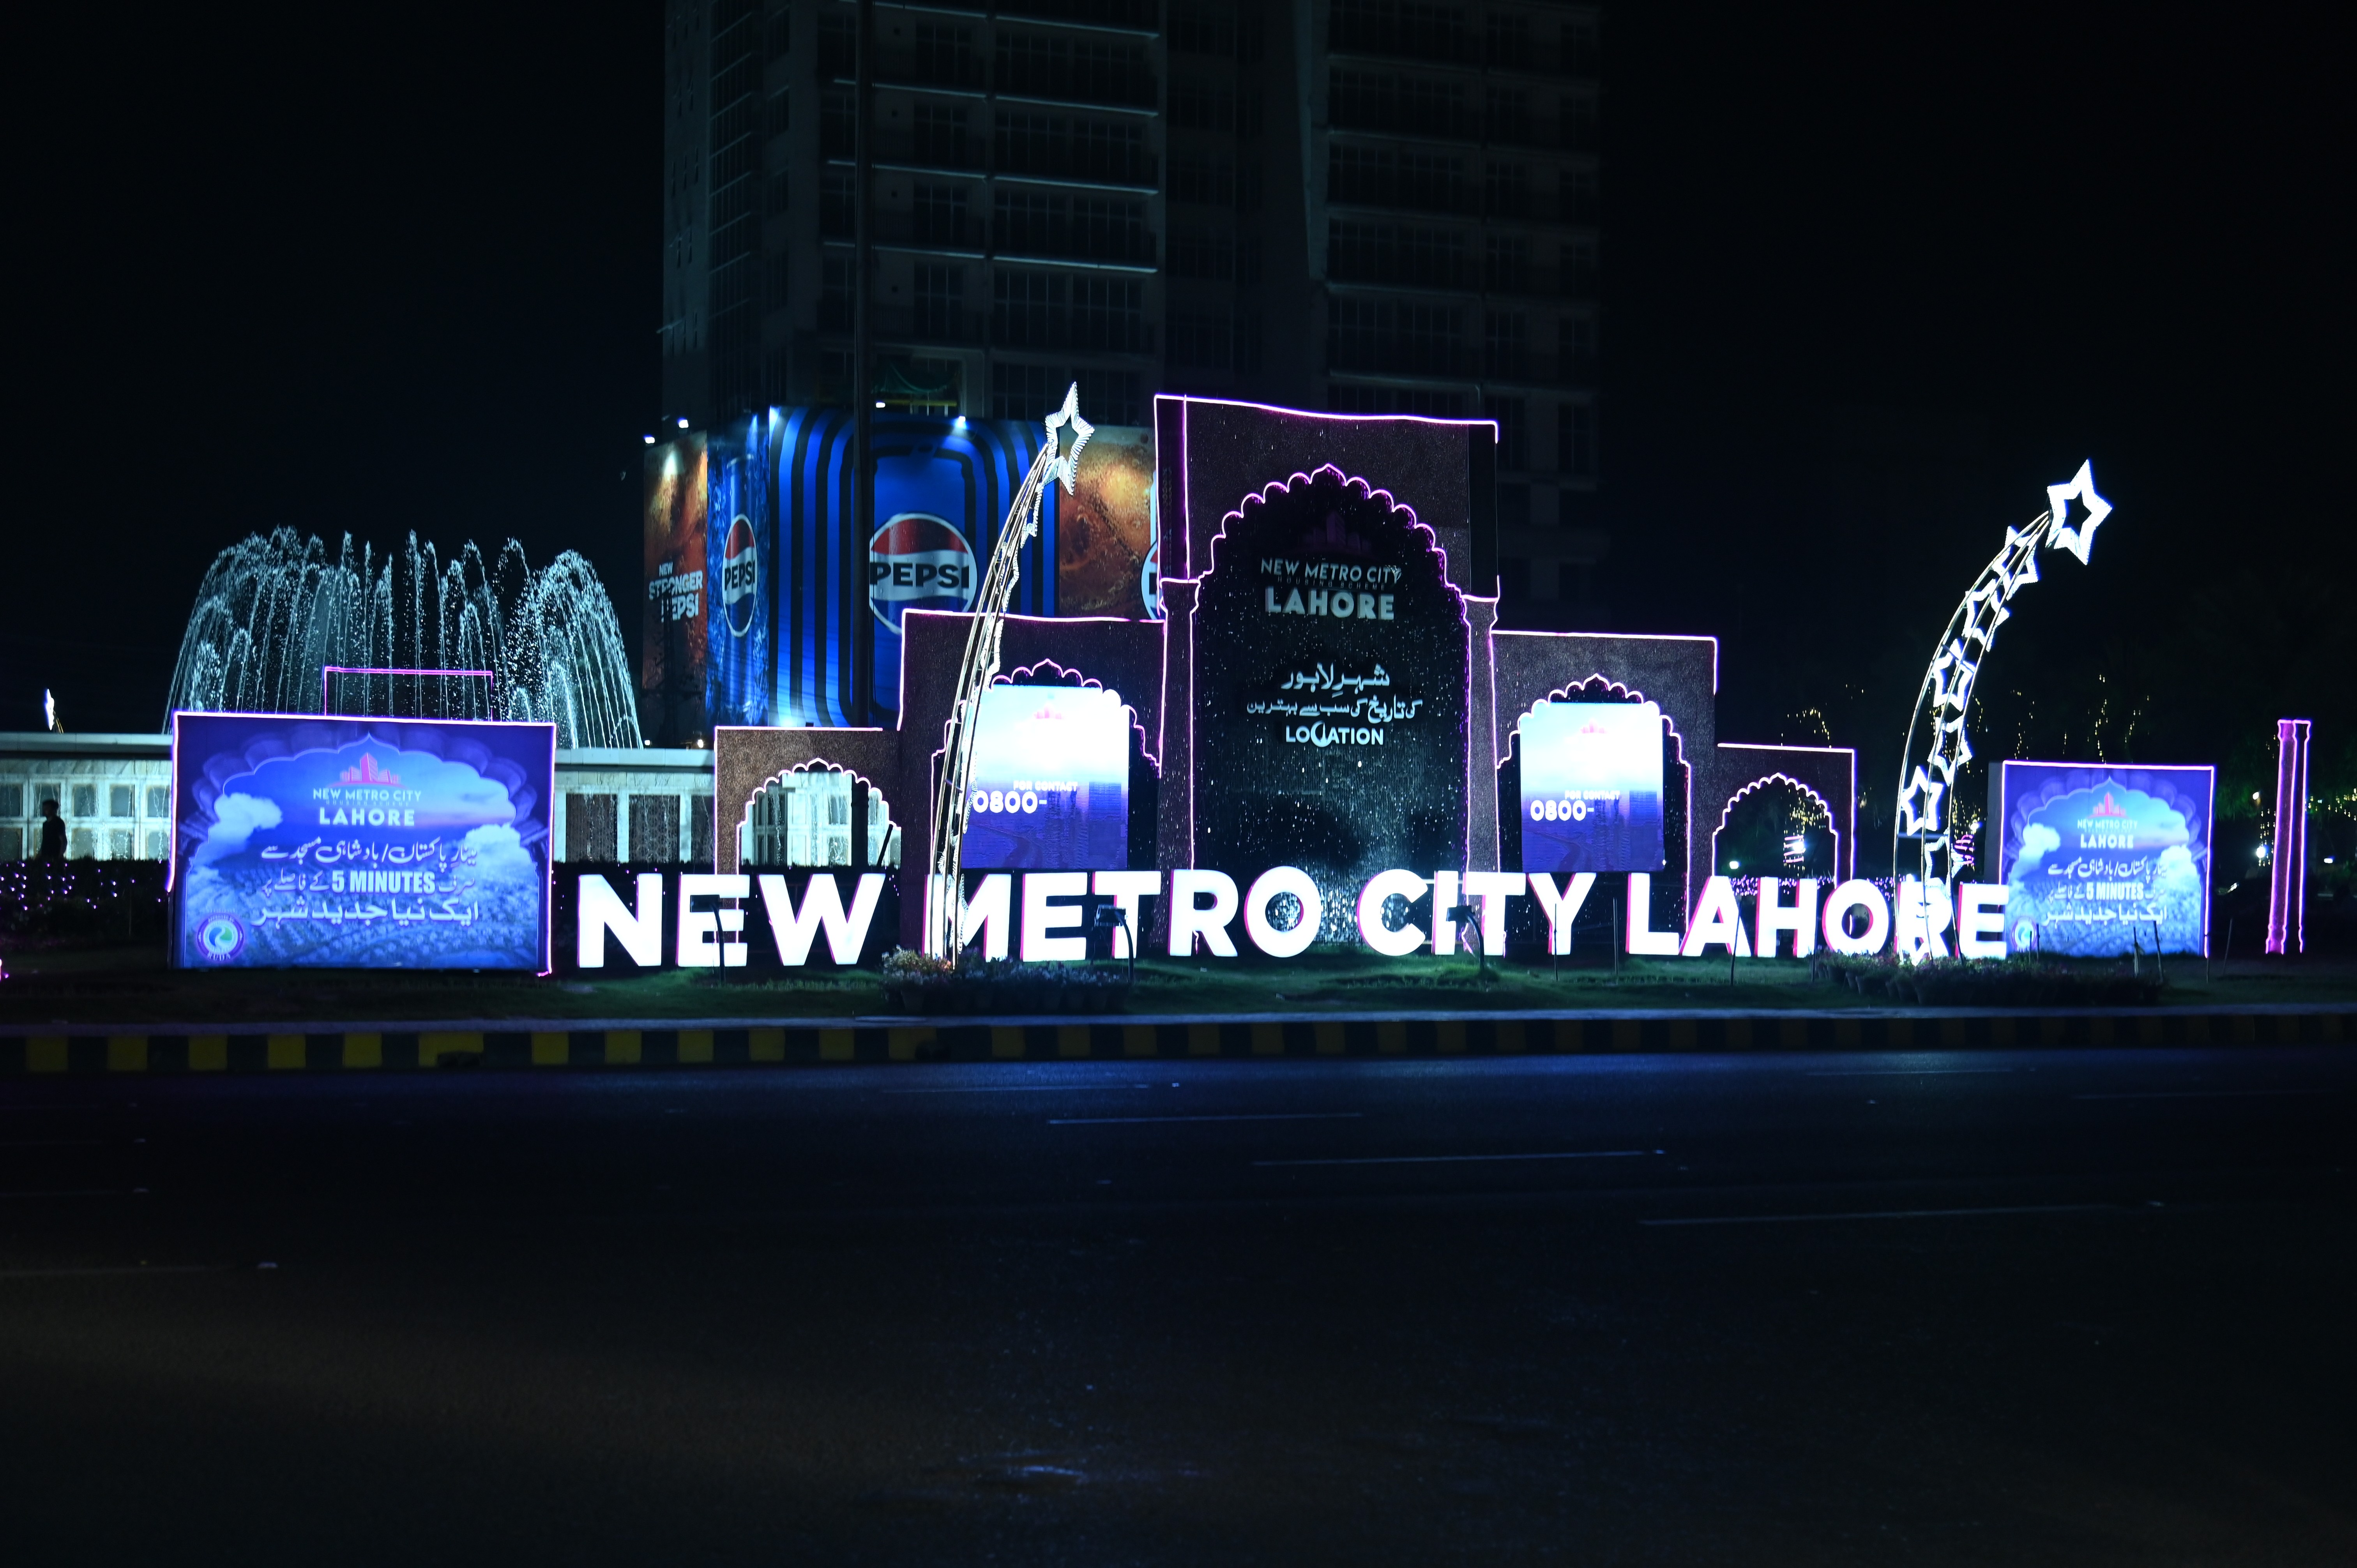 The new metro city Lahore